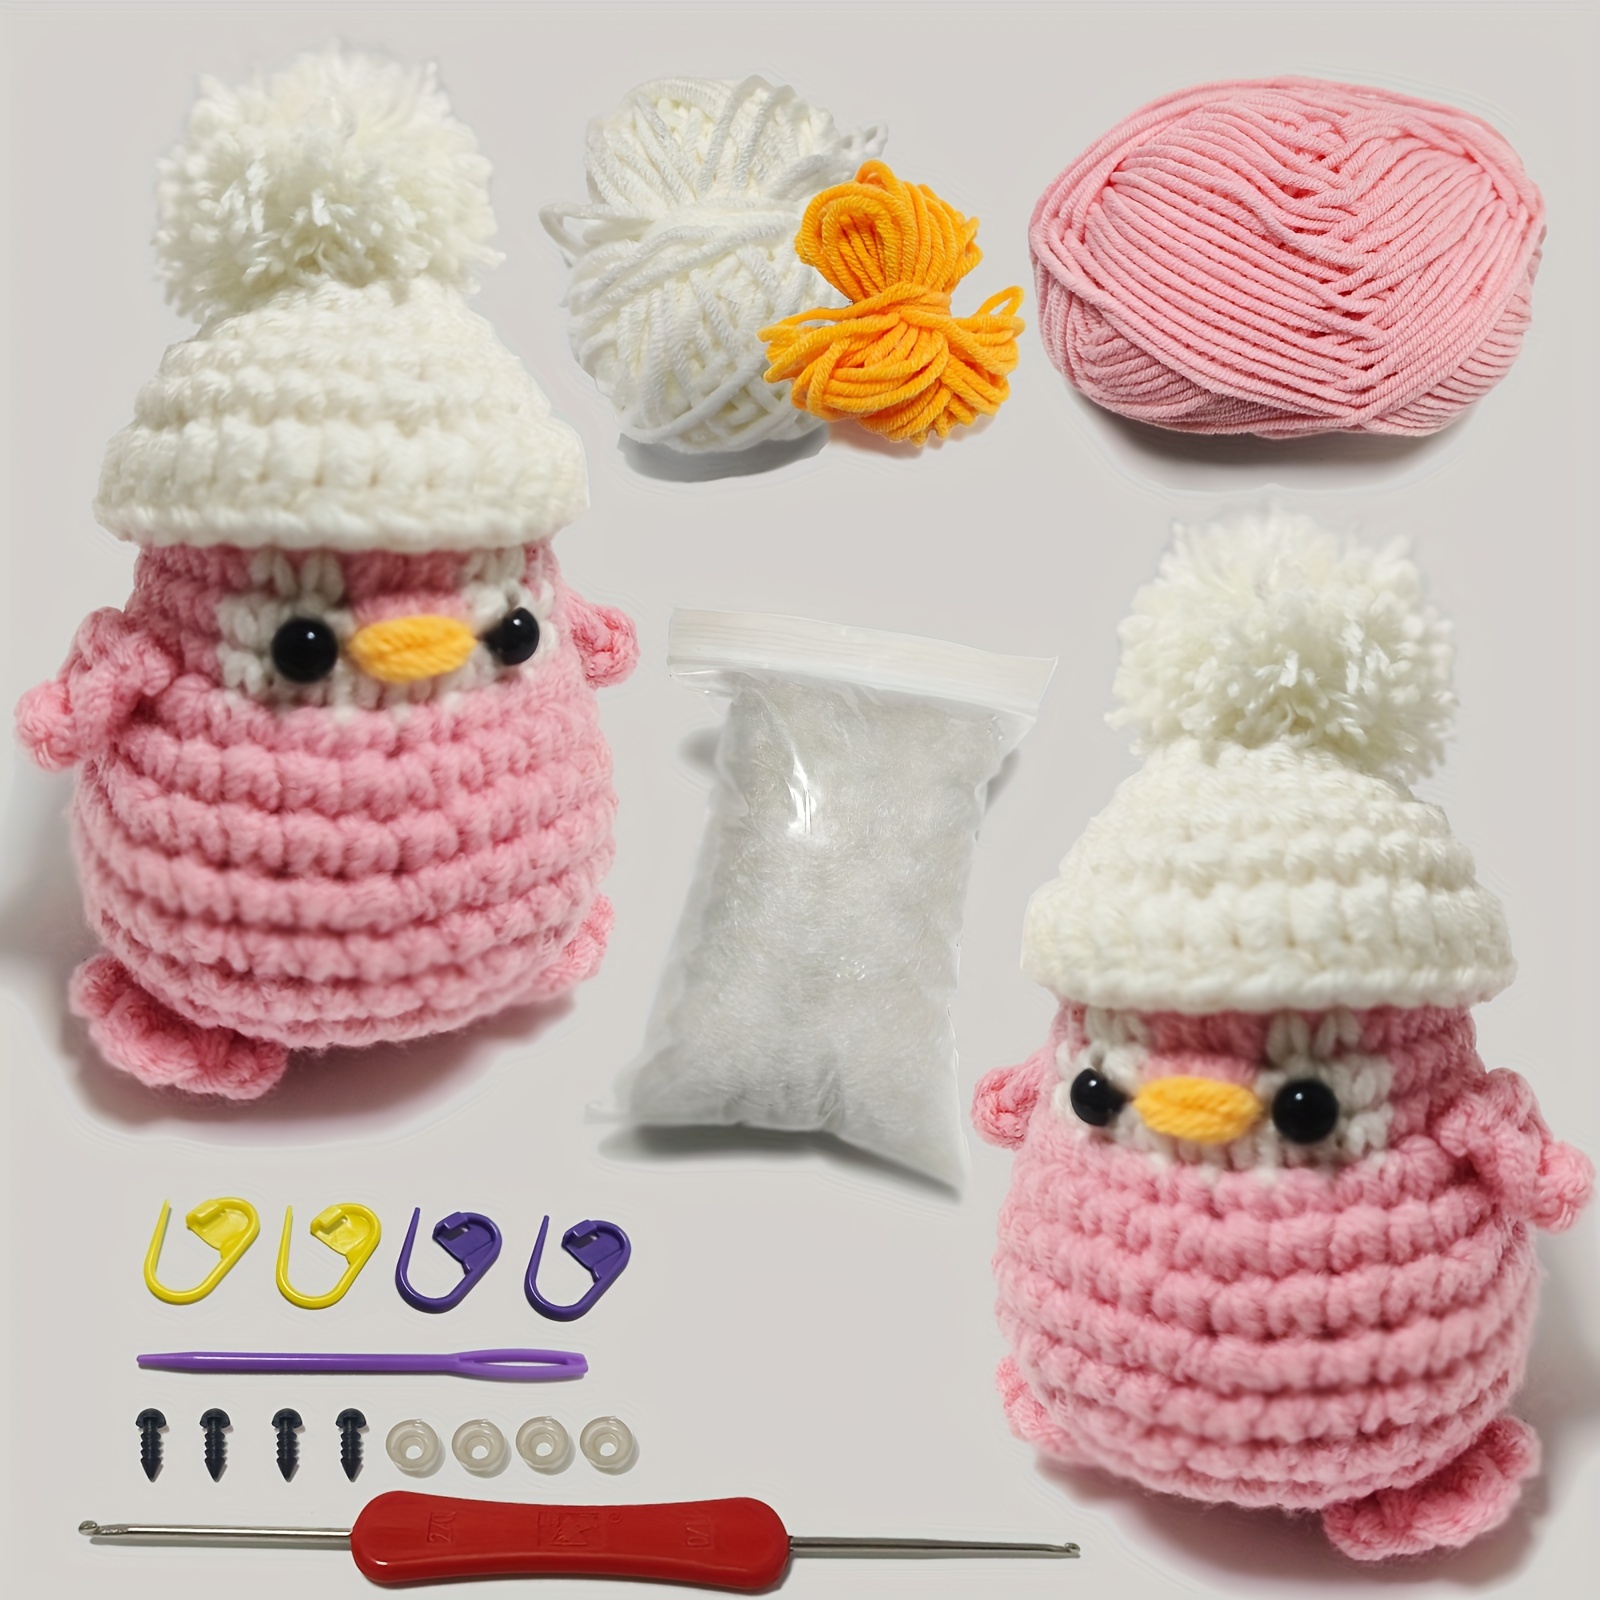 Crochet Kit for Beginners Handmade Knitting Animals Complete Crochet Set